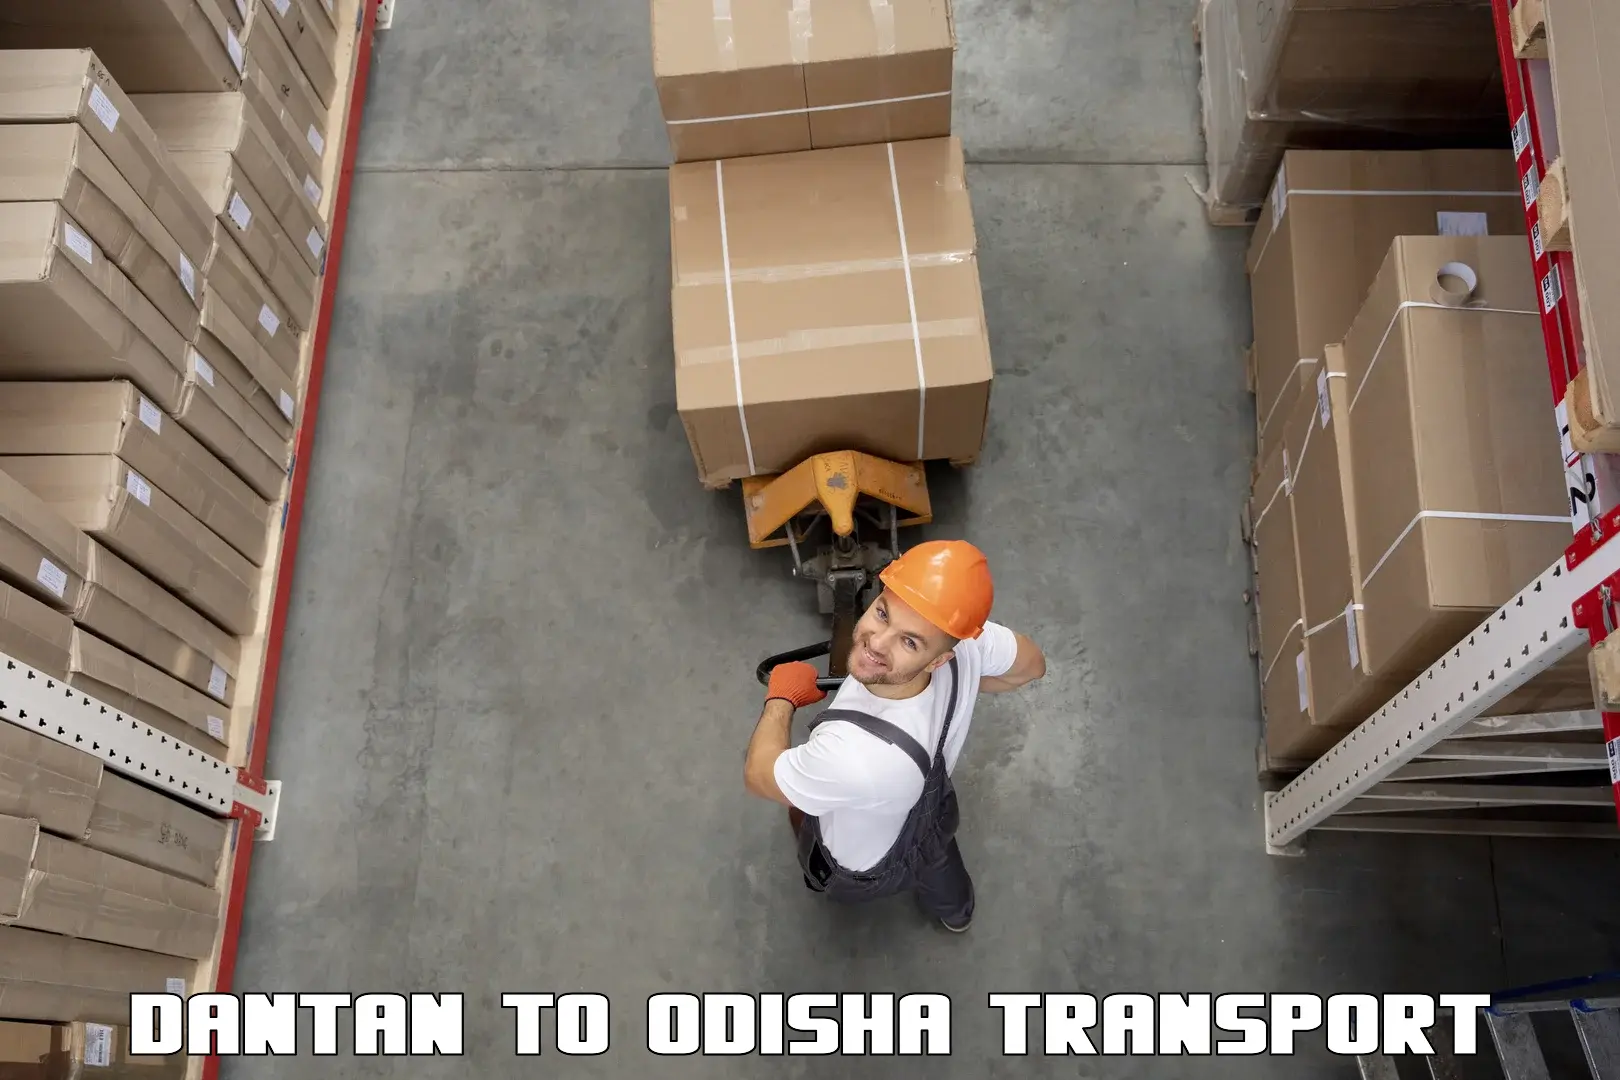 India truck logistics services Dantan to Bonth